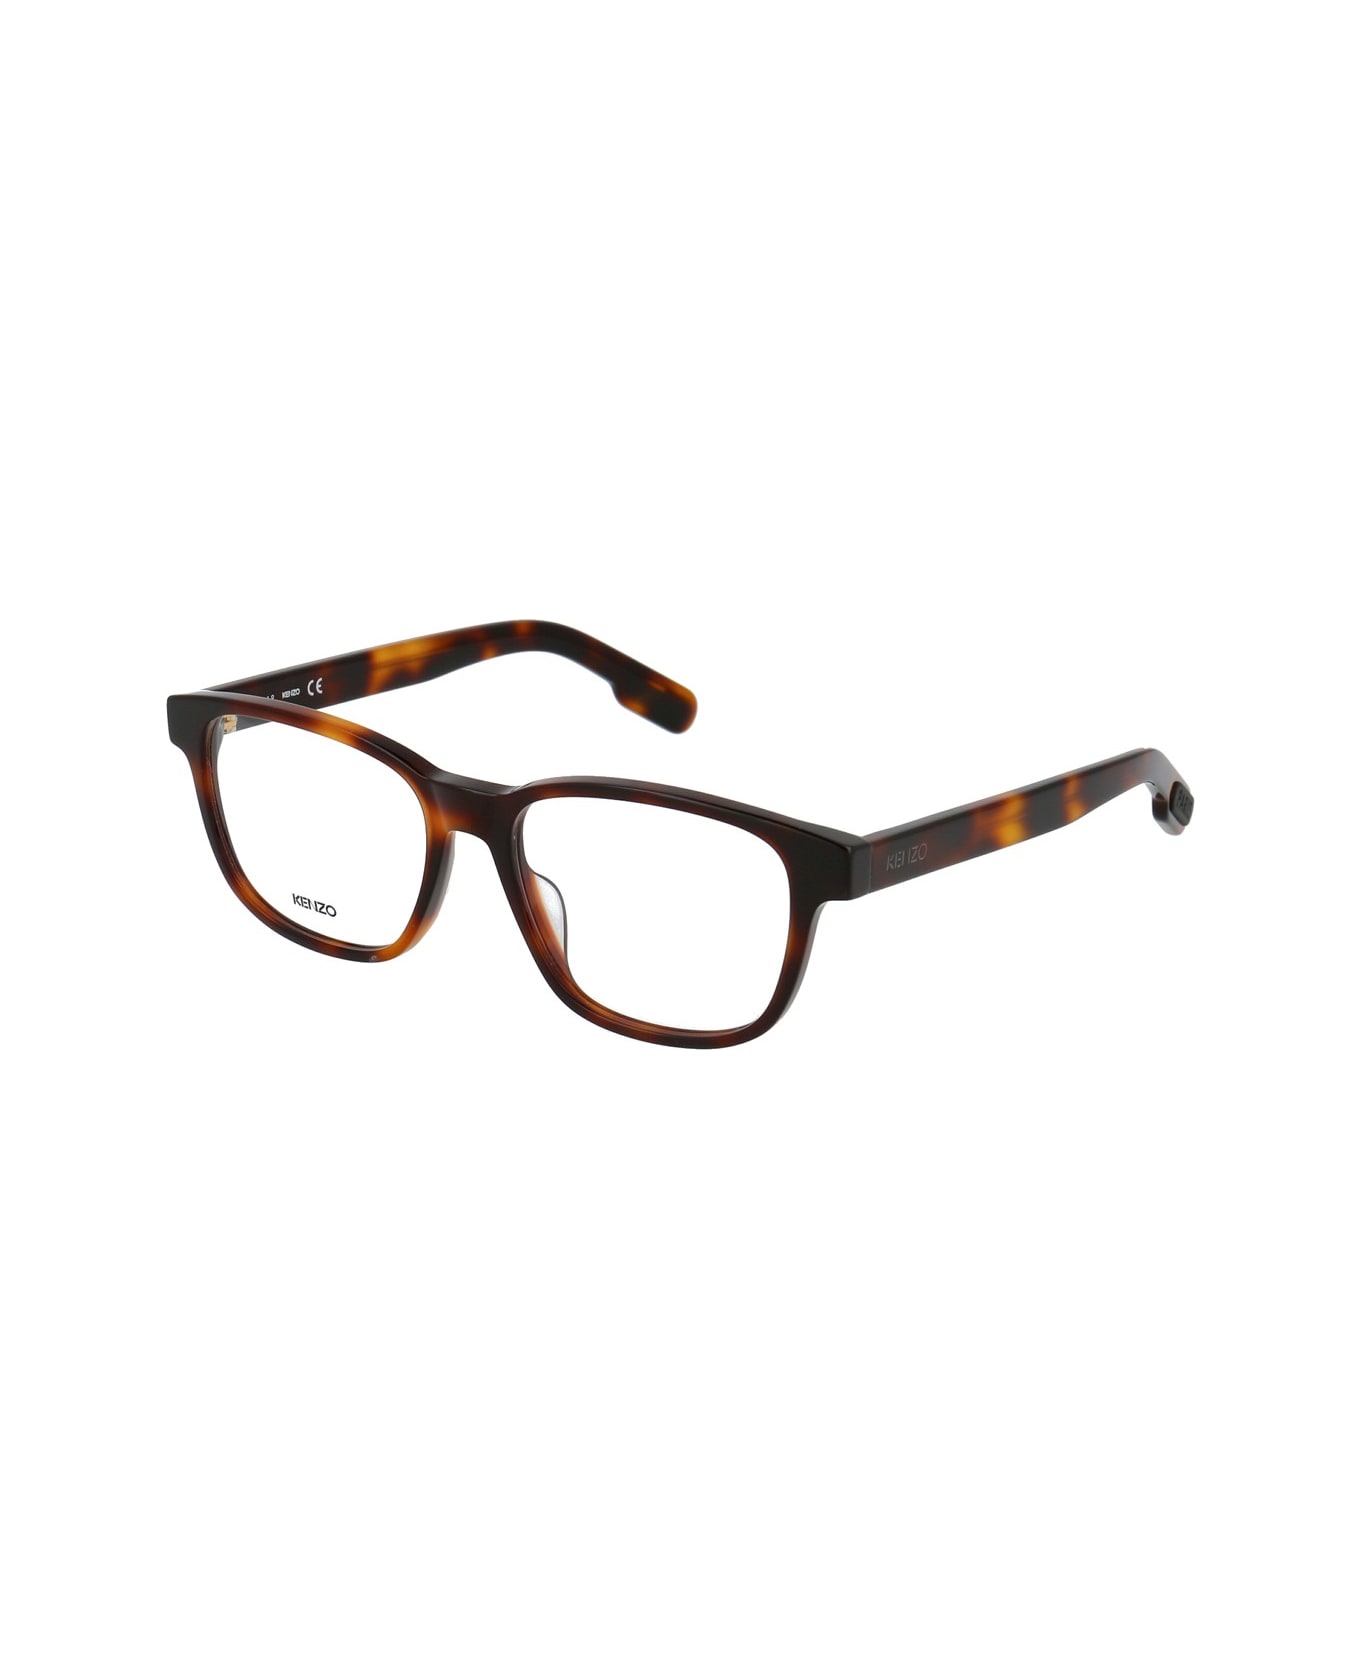 Kenzo Kz50026i Glasses - Marrone アイウェア